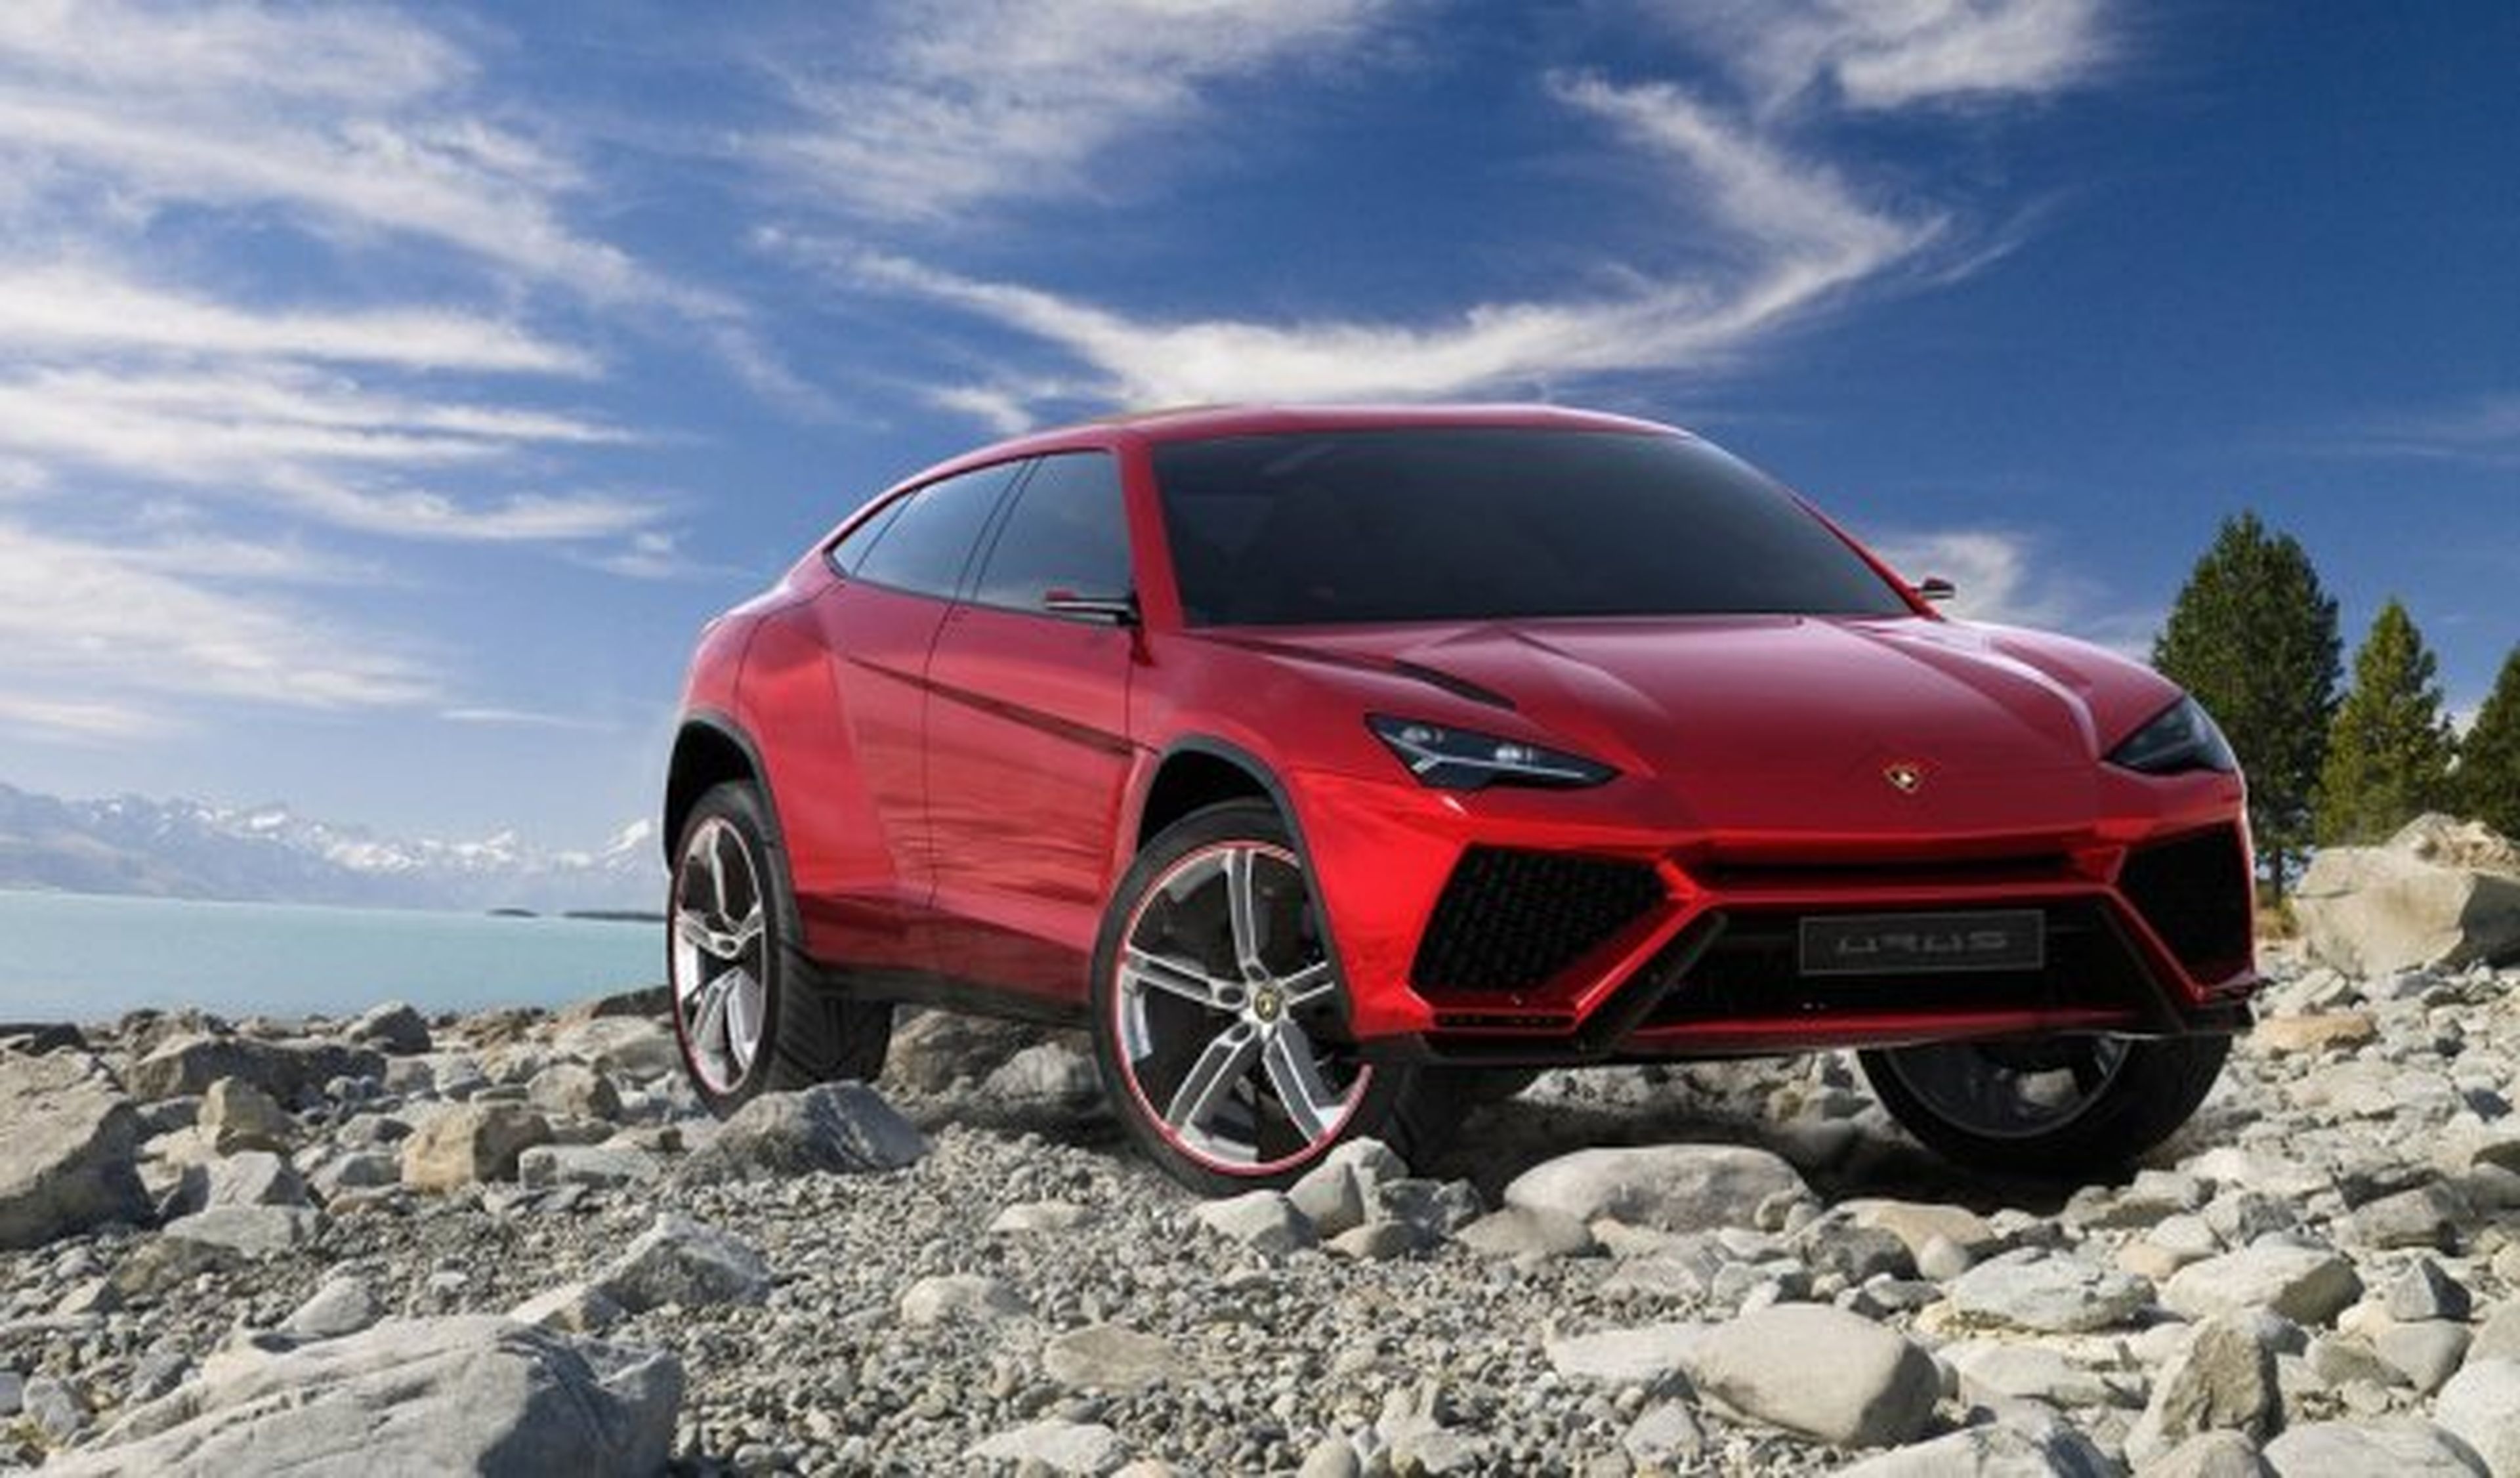 El Gobierno italiano ofrece incentivos a Lamborghini